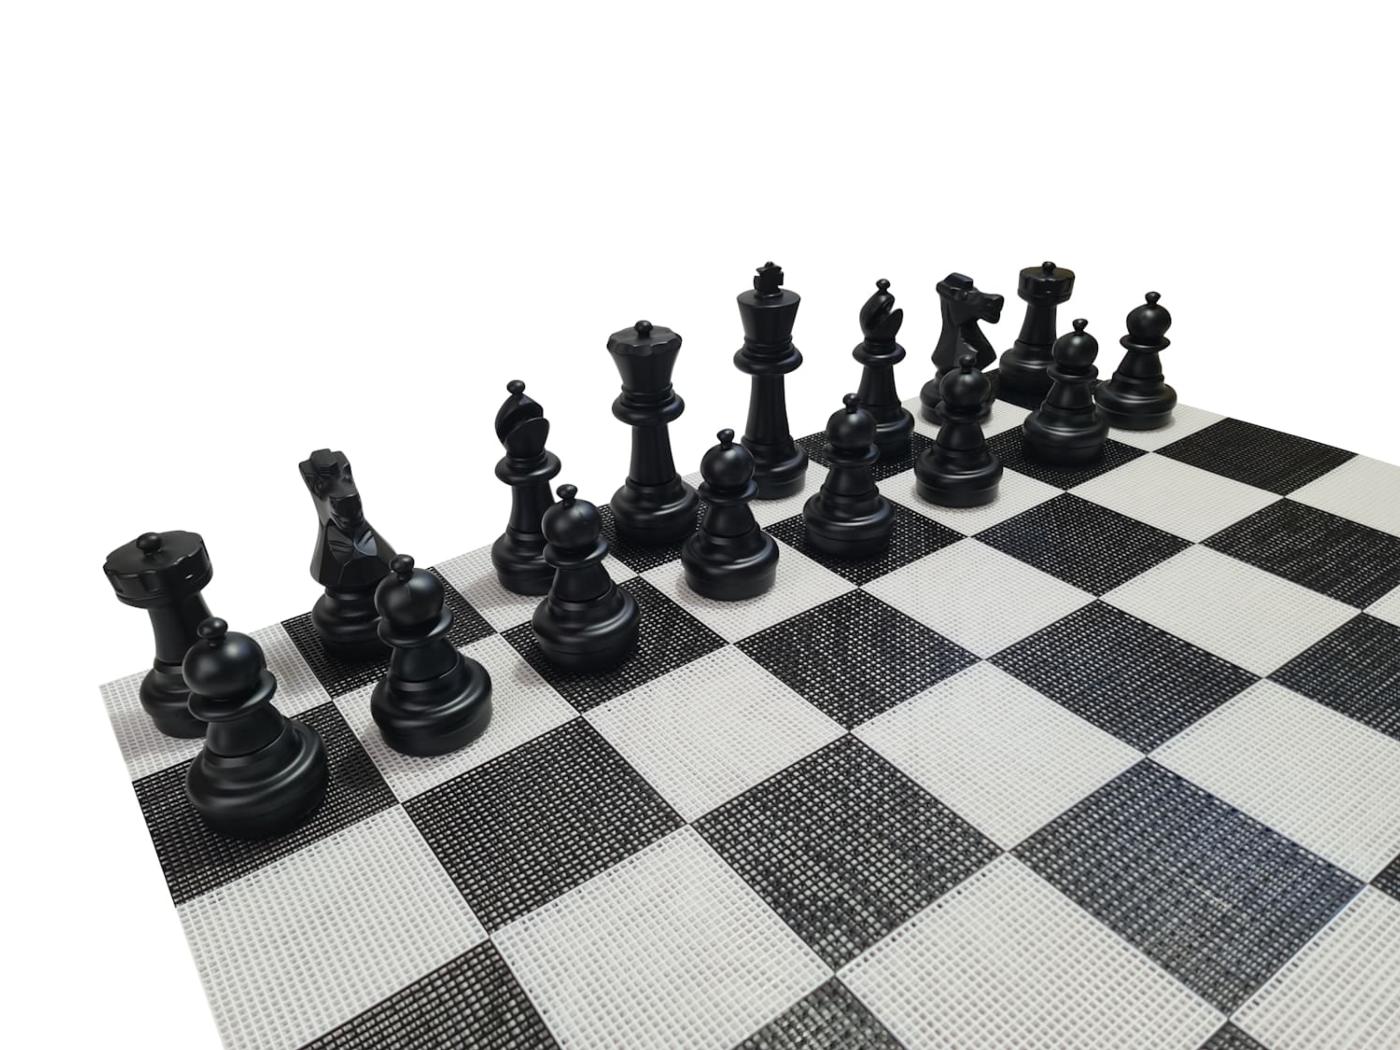 Joc d'escacs gegant amb tauler rígid gegant inclòs peces negres sobre tauler